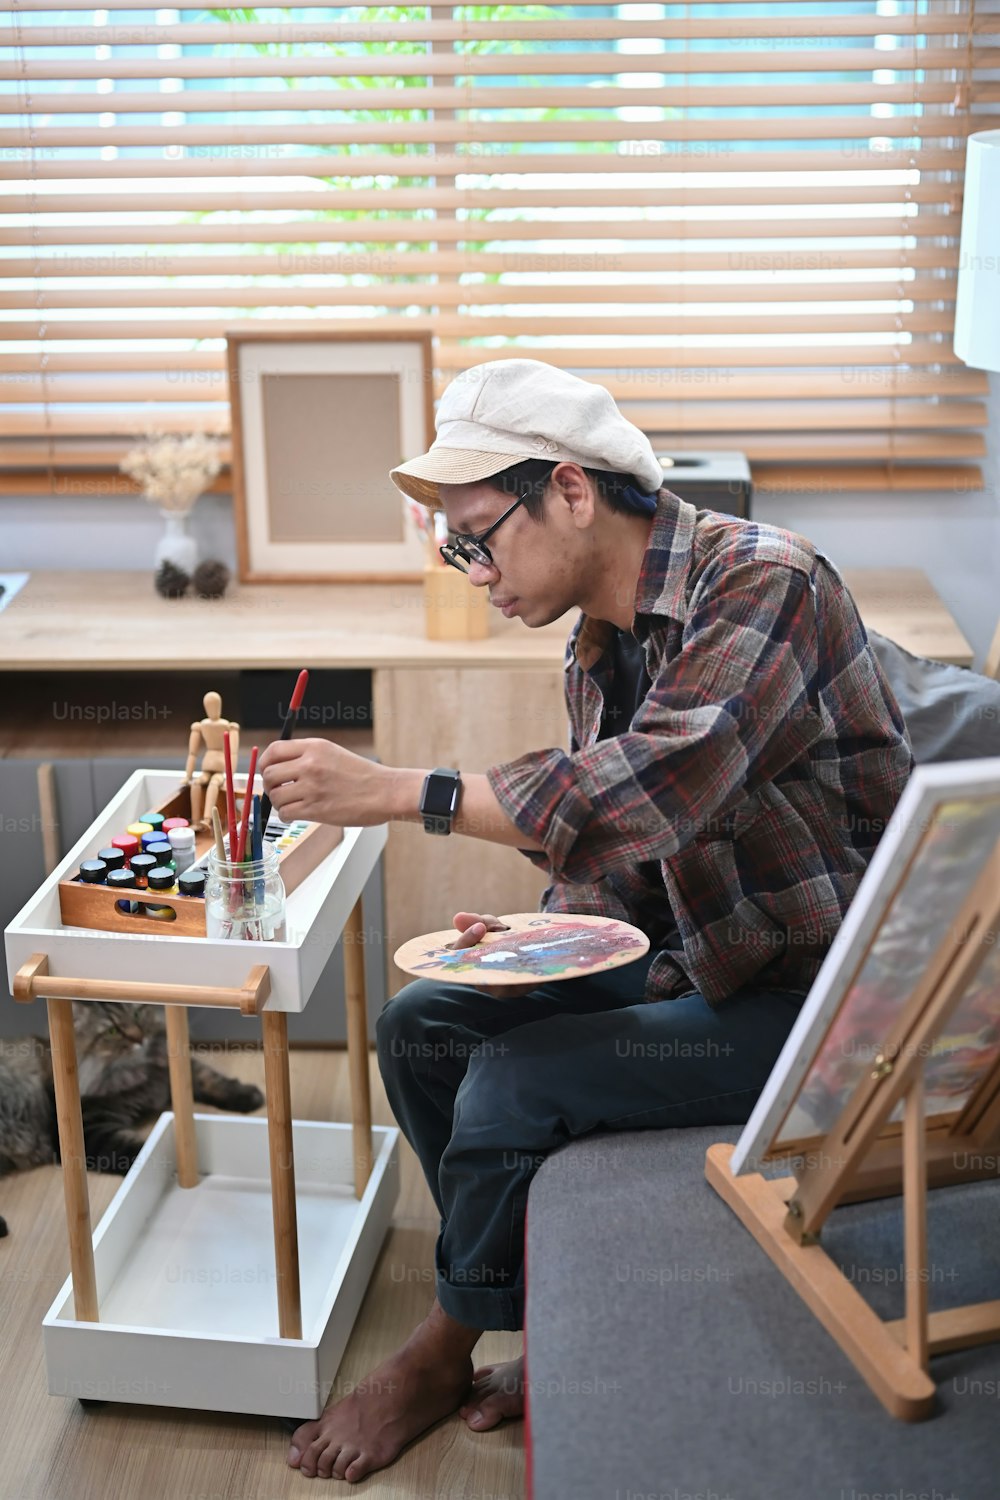 Artista masculino pintando con acuarela en un estudio de arte.